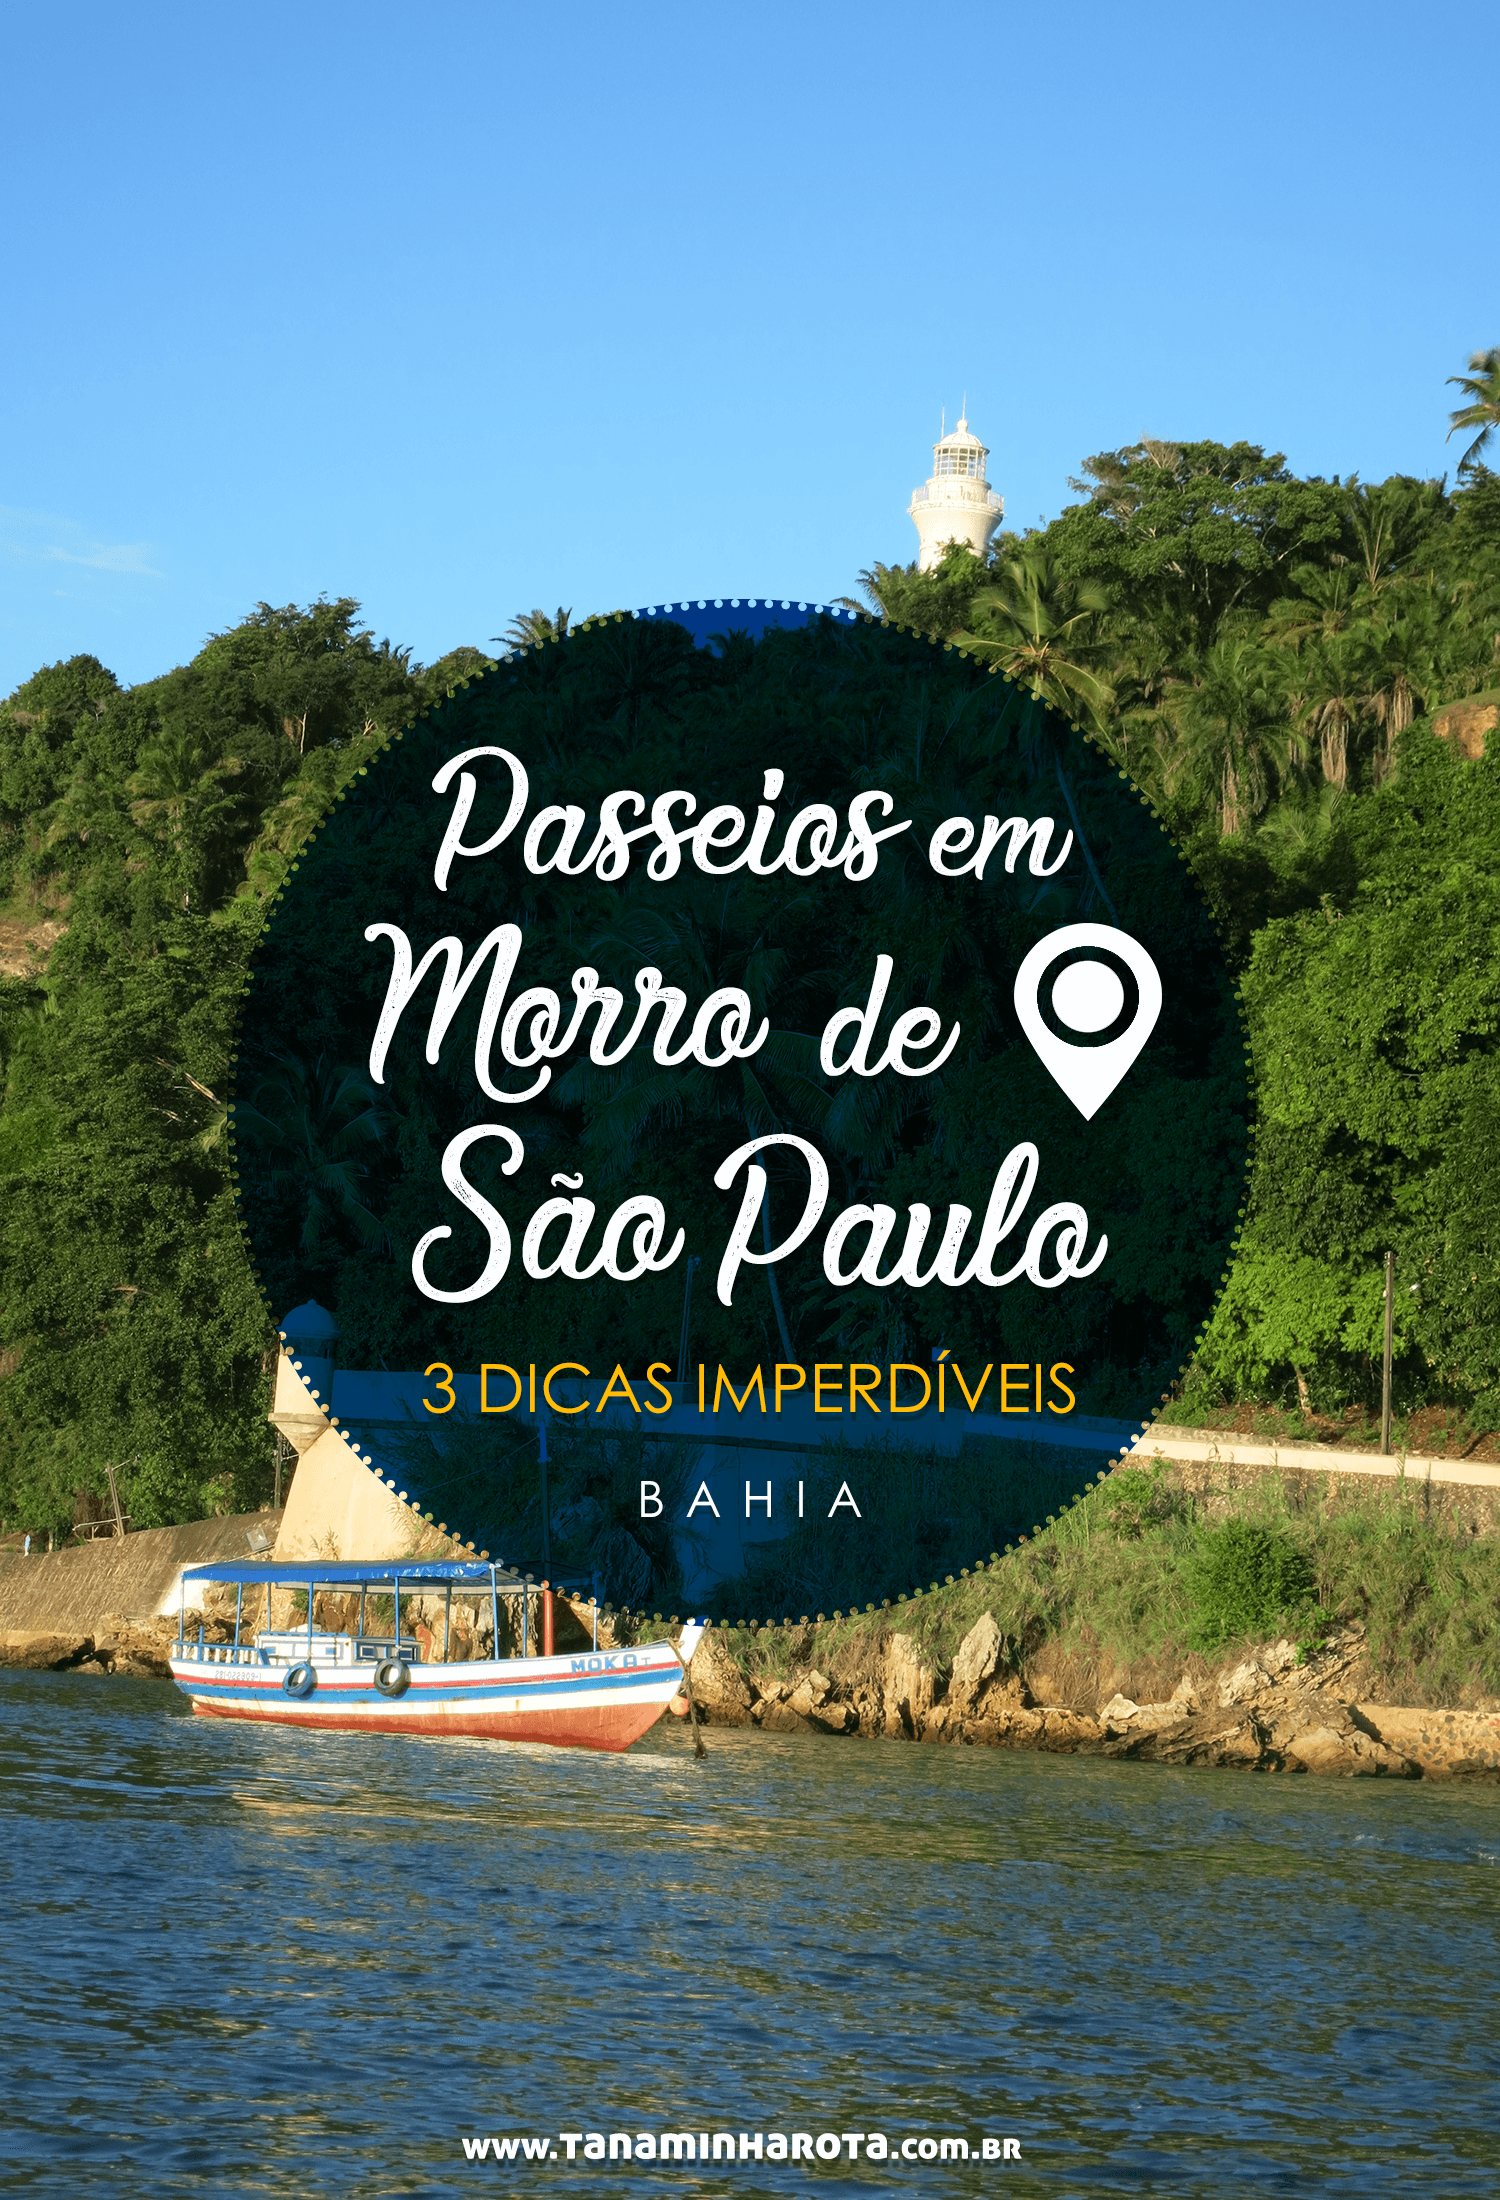 Descubra os melhores passeios em Morro de São Paulo, na Bahia, e comece a montar seu roteiro! #bahia #morrodesaopaulo #brasil #praia #viagem